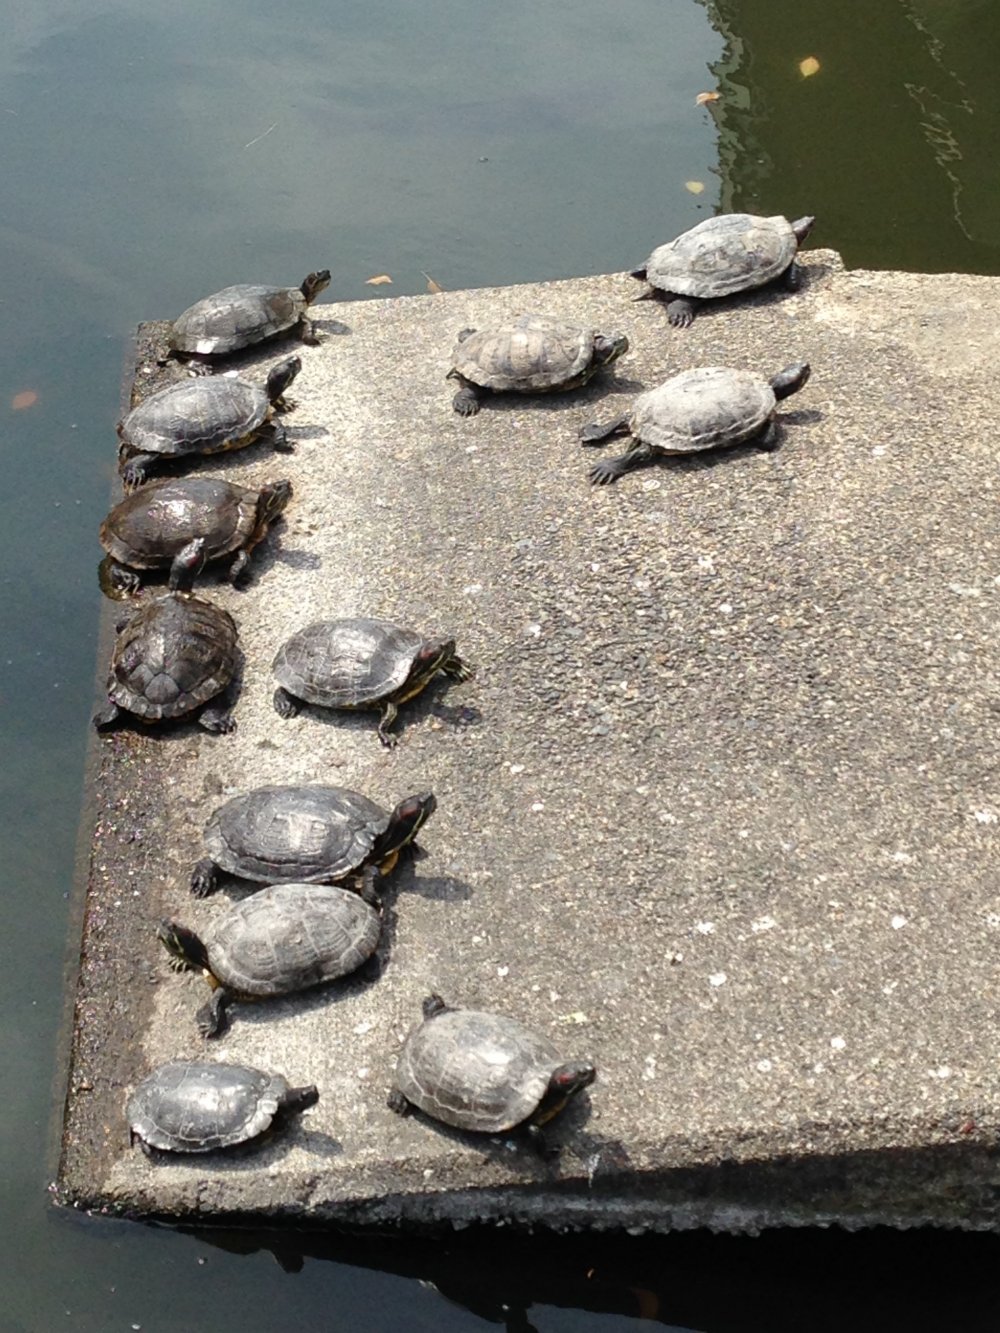 Красавицы черепахи вылезли погреться на солнышке